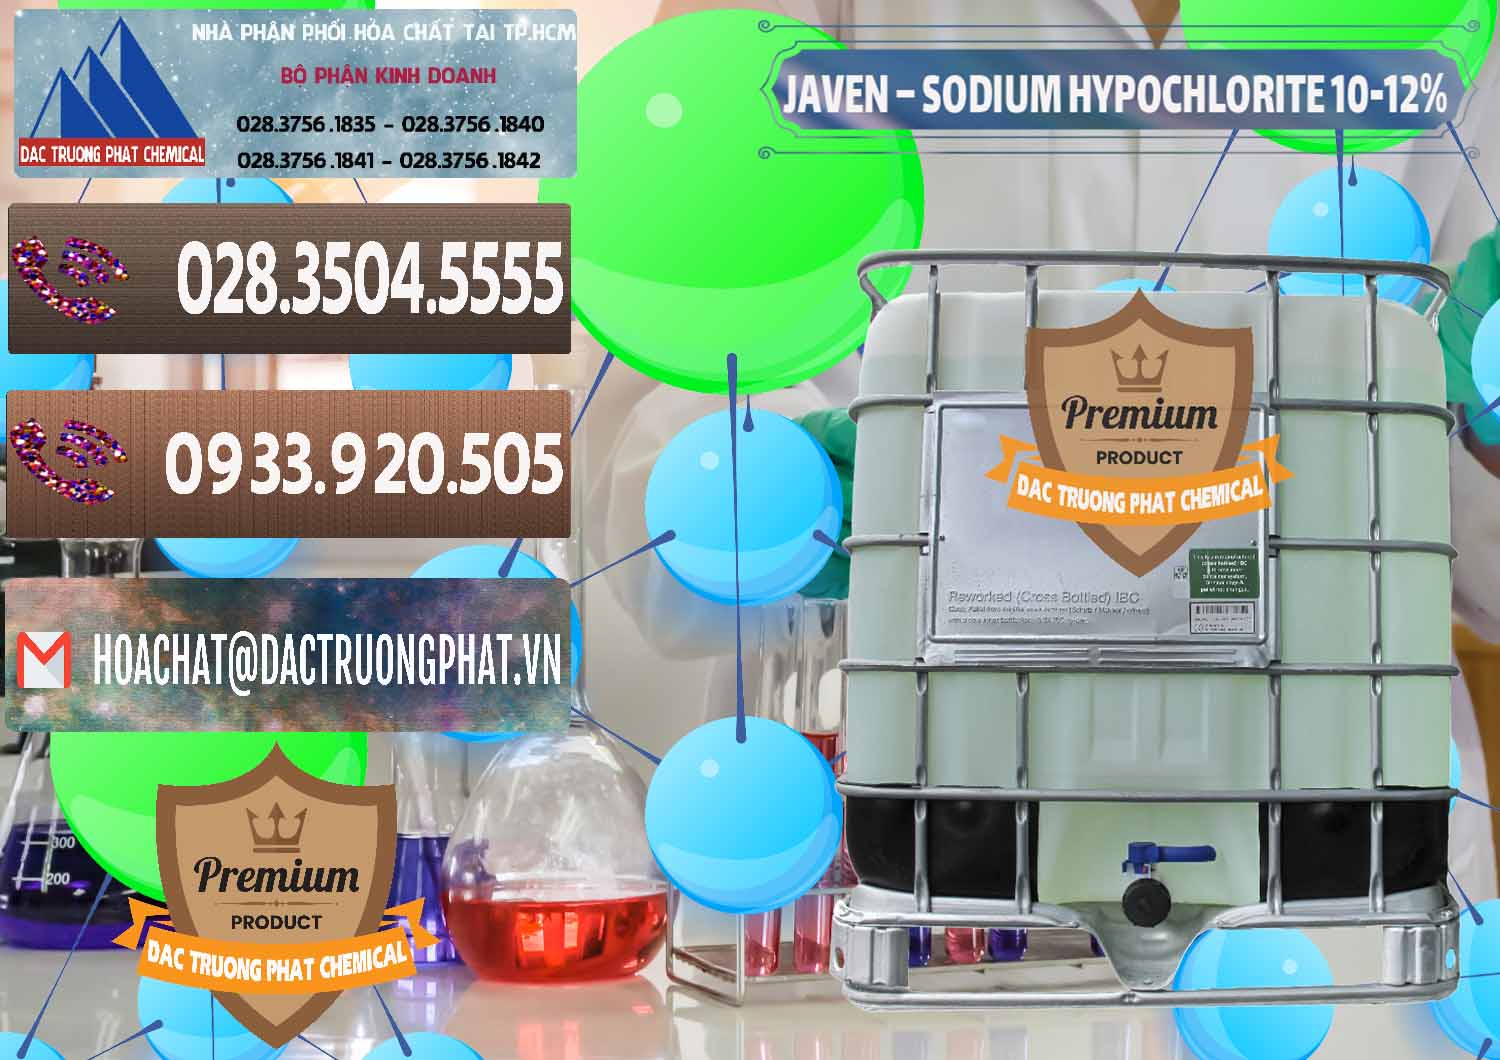 Công ty chuyên kinh doanh _ phân phối Javen - Sodium Hypochlorite 10-12% Việt Nam - 0188 - Đơn vị cung ứng - phân phối hóa chất tại TP.HCM - hoachatviet.net